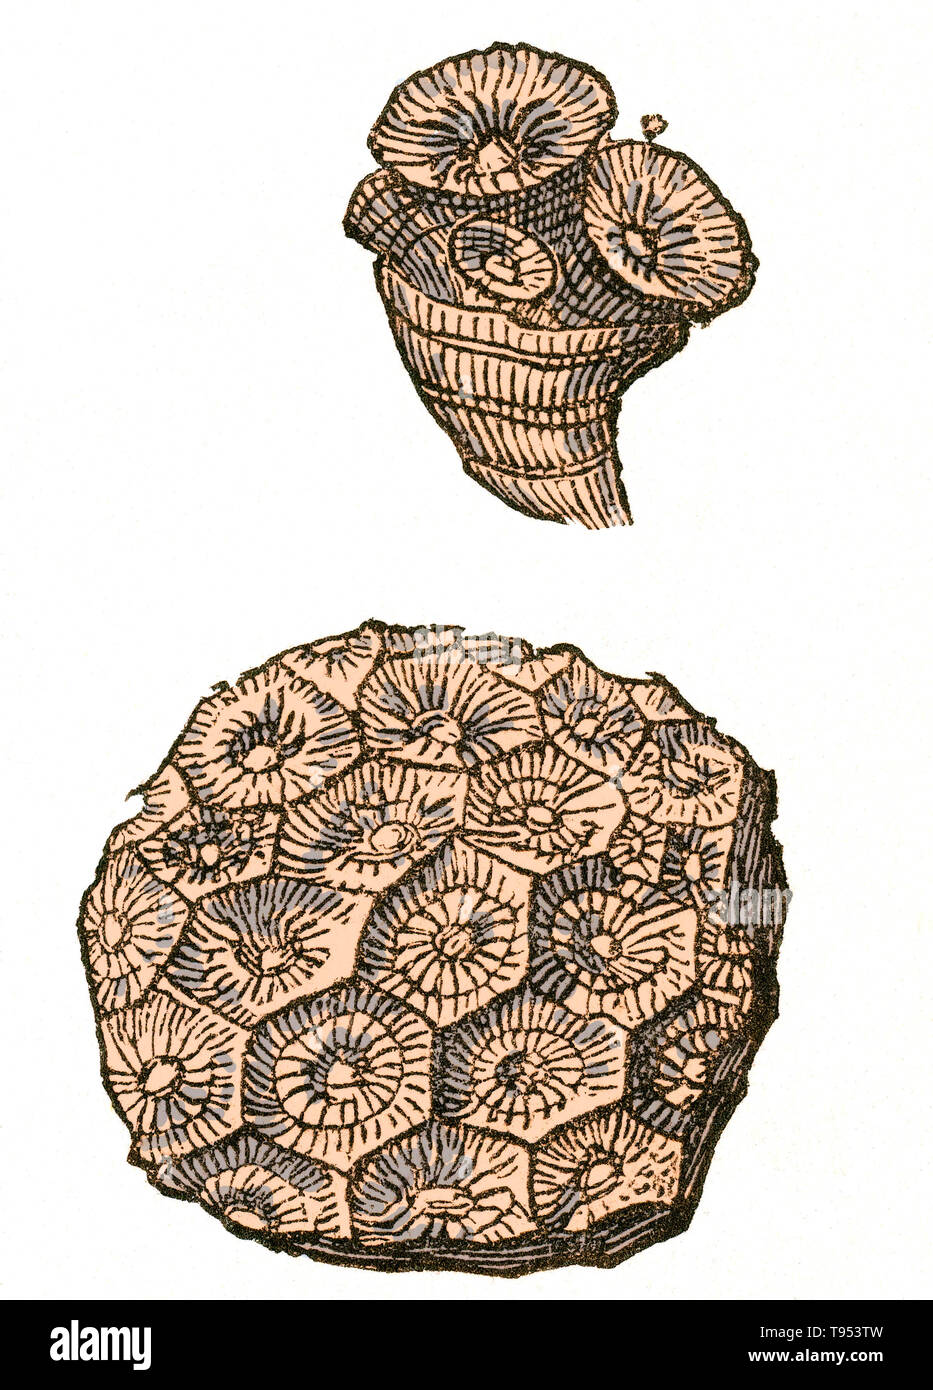 Fossil einer rugose Korallen Kolonie (Lonsdaleia Floriformis), die während der Karbon lebten.  Illustration von Louis Figuiers die Welt vor der Sintflut, 1867 amerikanische Ausgabe. Stockfoto